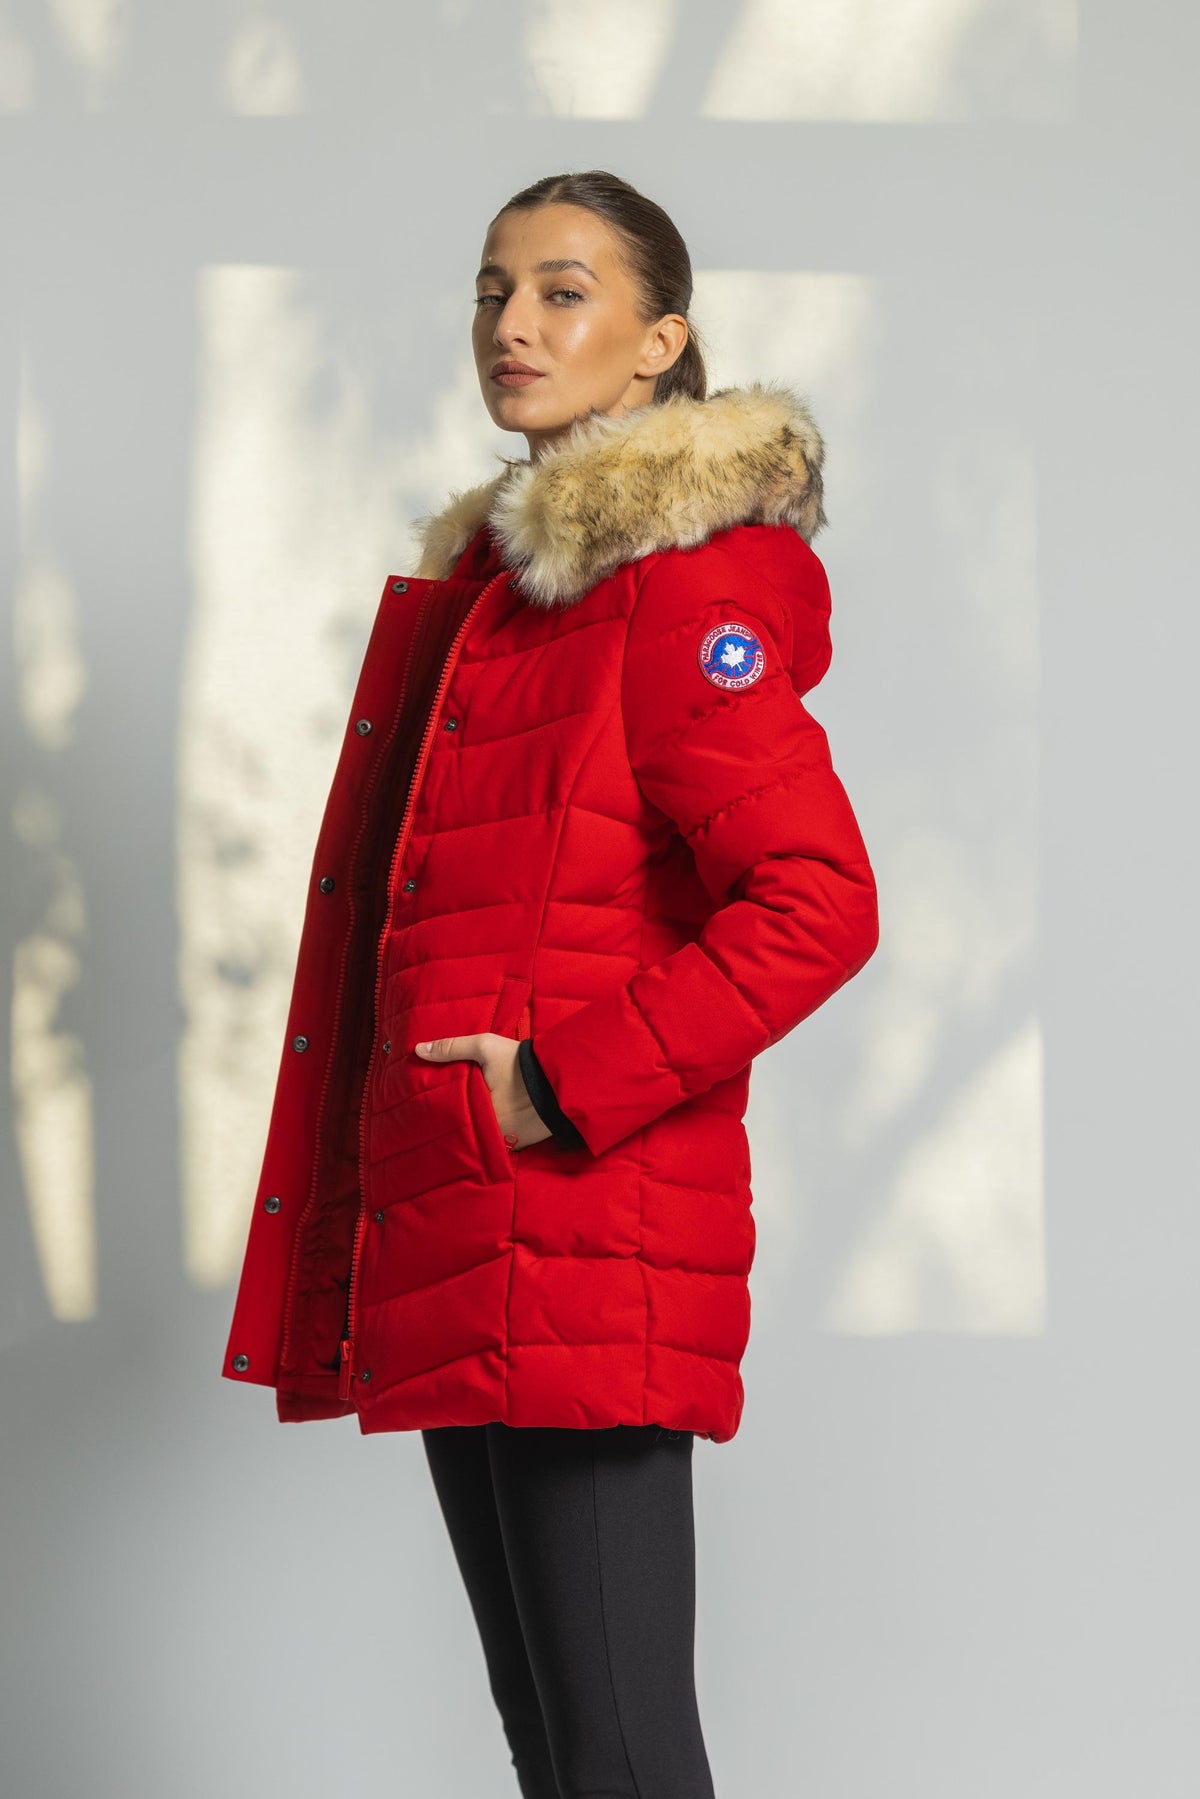 Doudoune Ginette Paragoose chaude à capuche avec fourrure pour femme couleur rouge de côté.